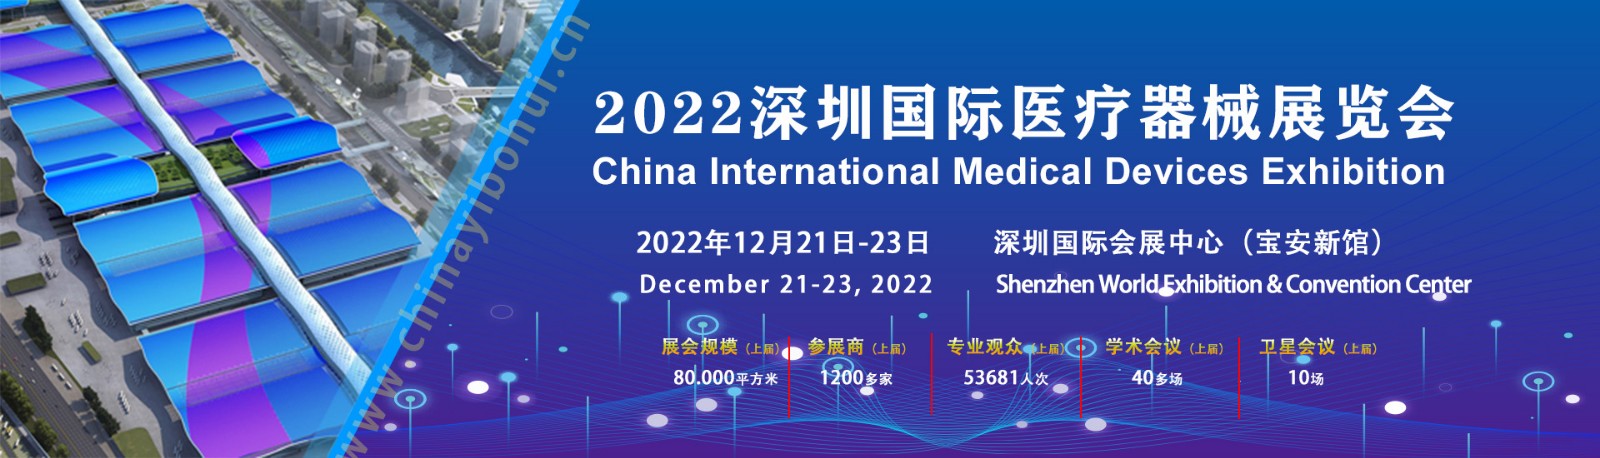 [展会动态]2022CMEH深圳国际医疗器械展览会——观展攻略大全